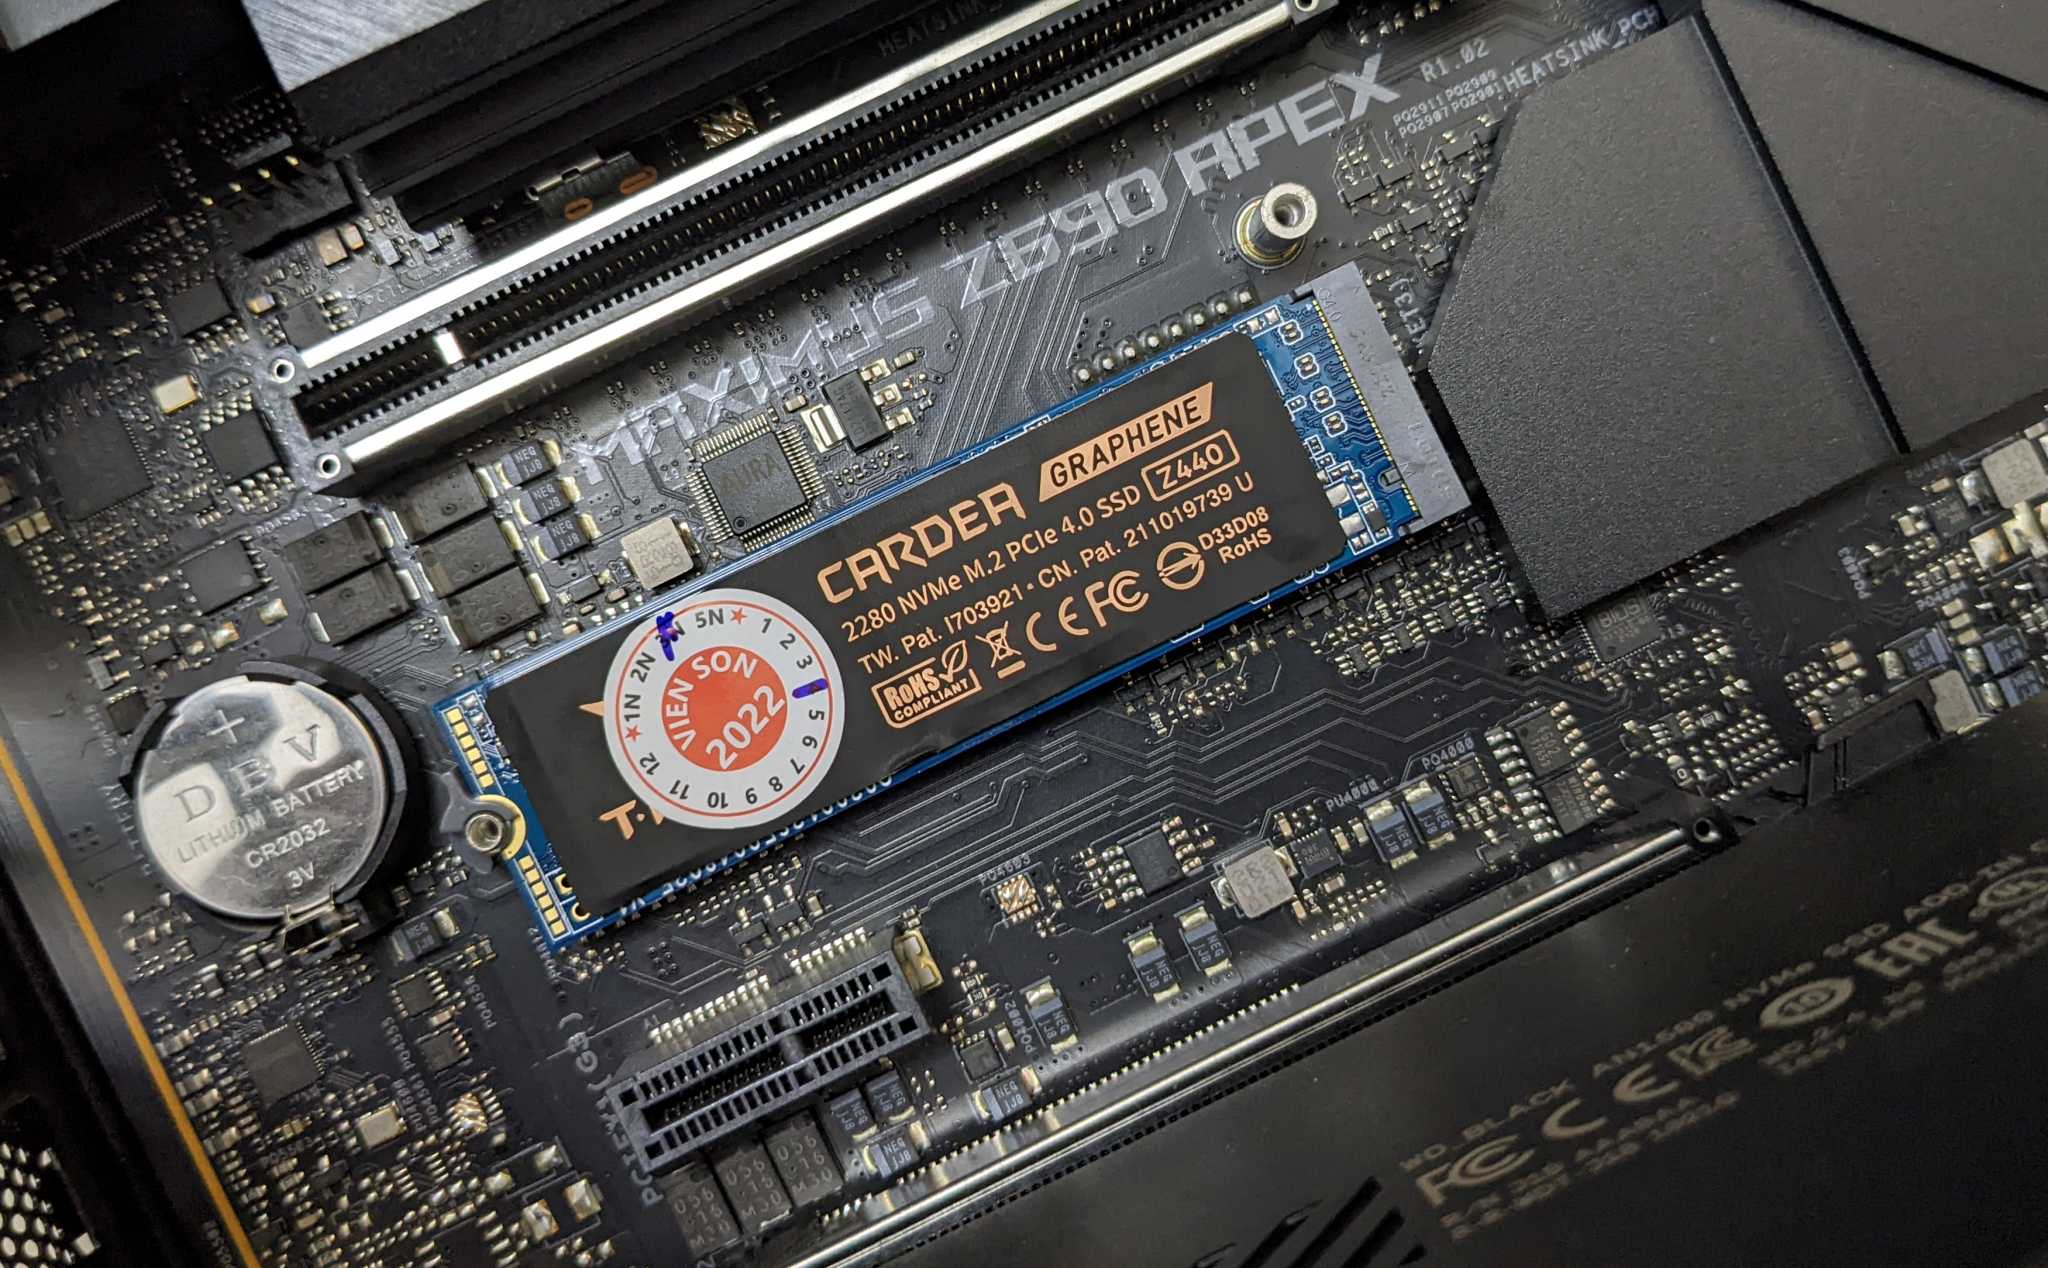 Chia sẻ với anh em ổ SSD PCIe Gen4 ngon mà mình đang xài, tản nhiệt graphene, giá mềm